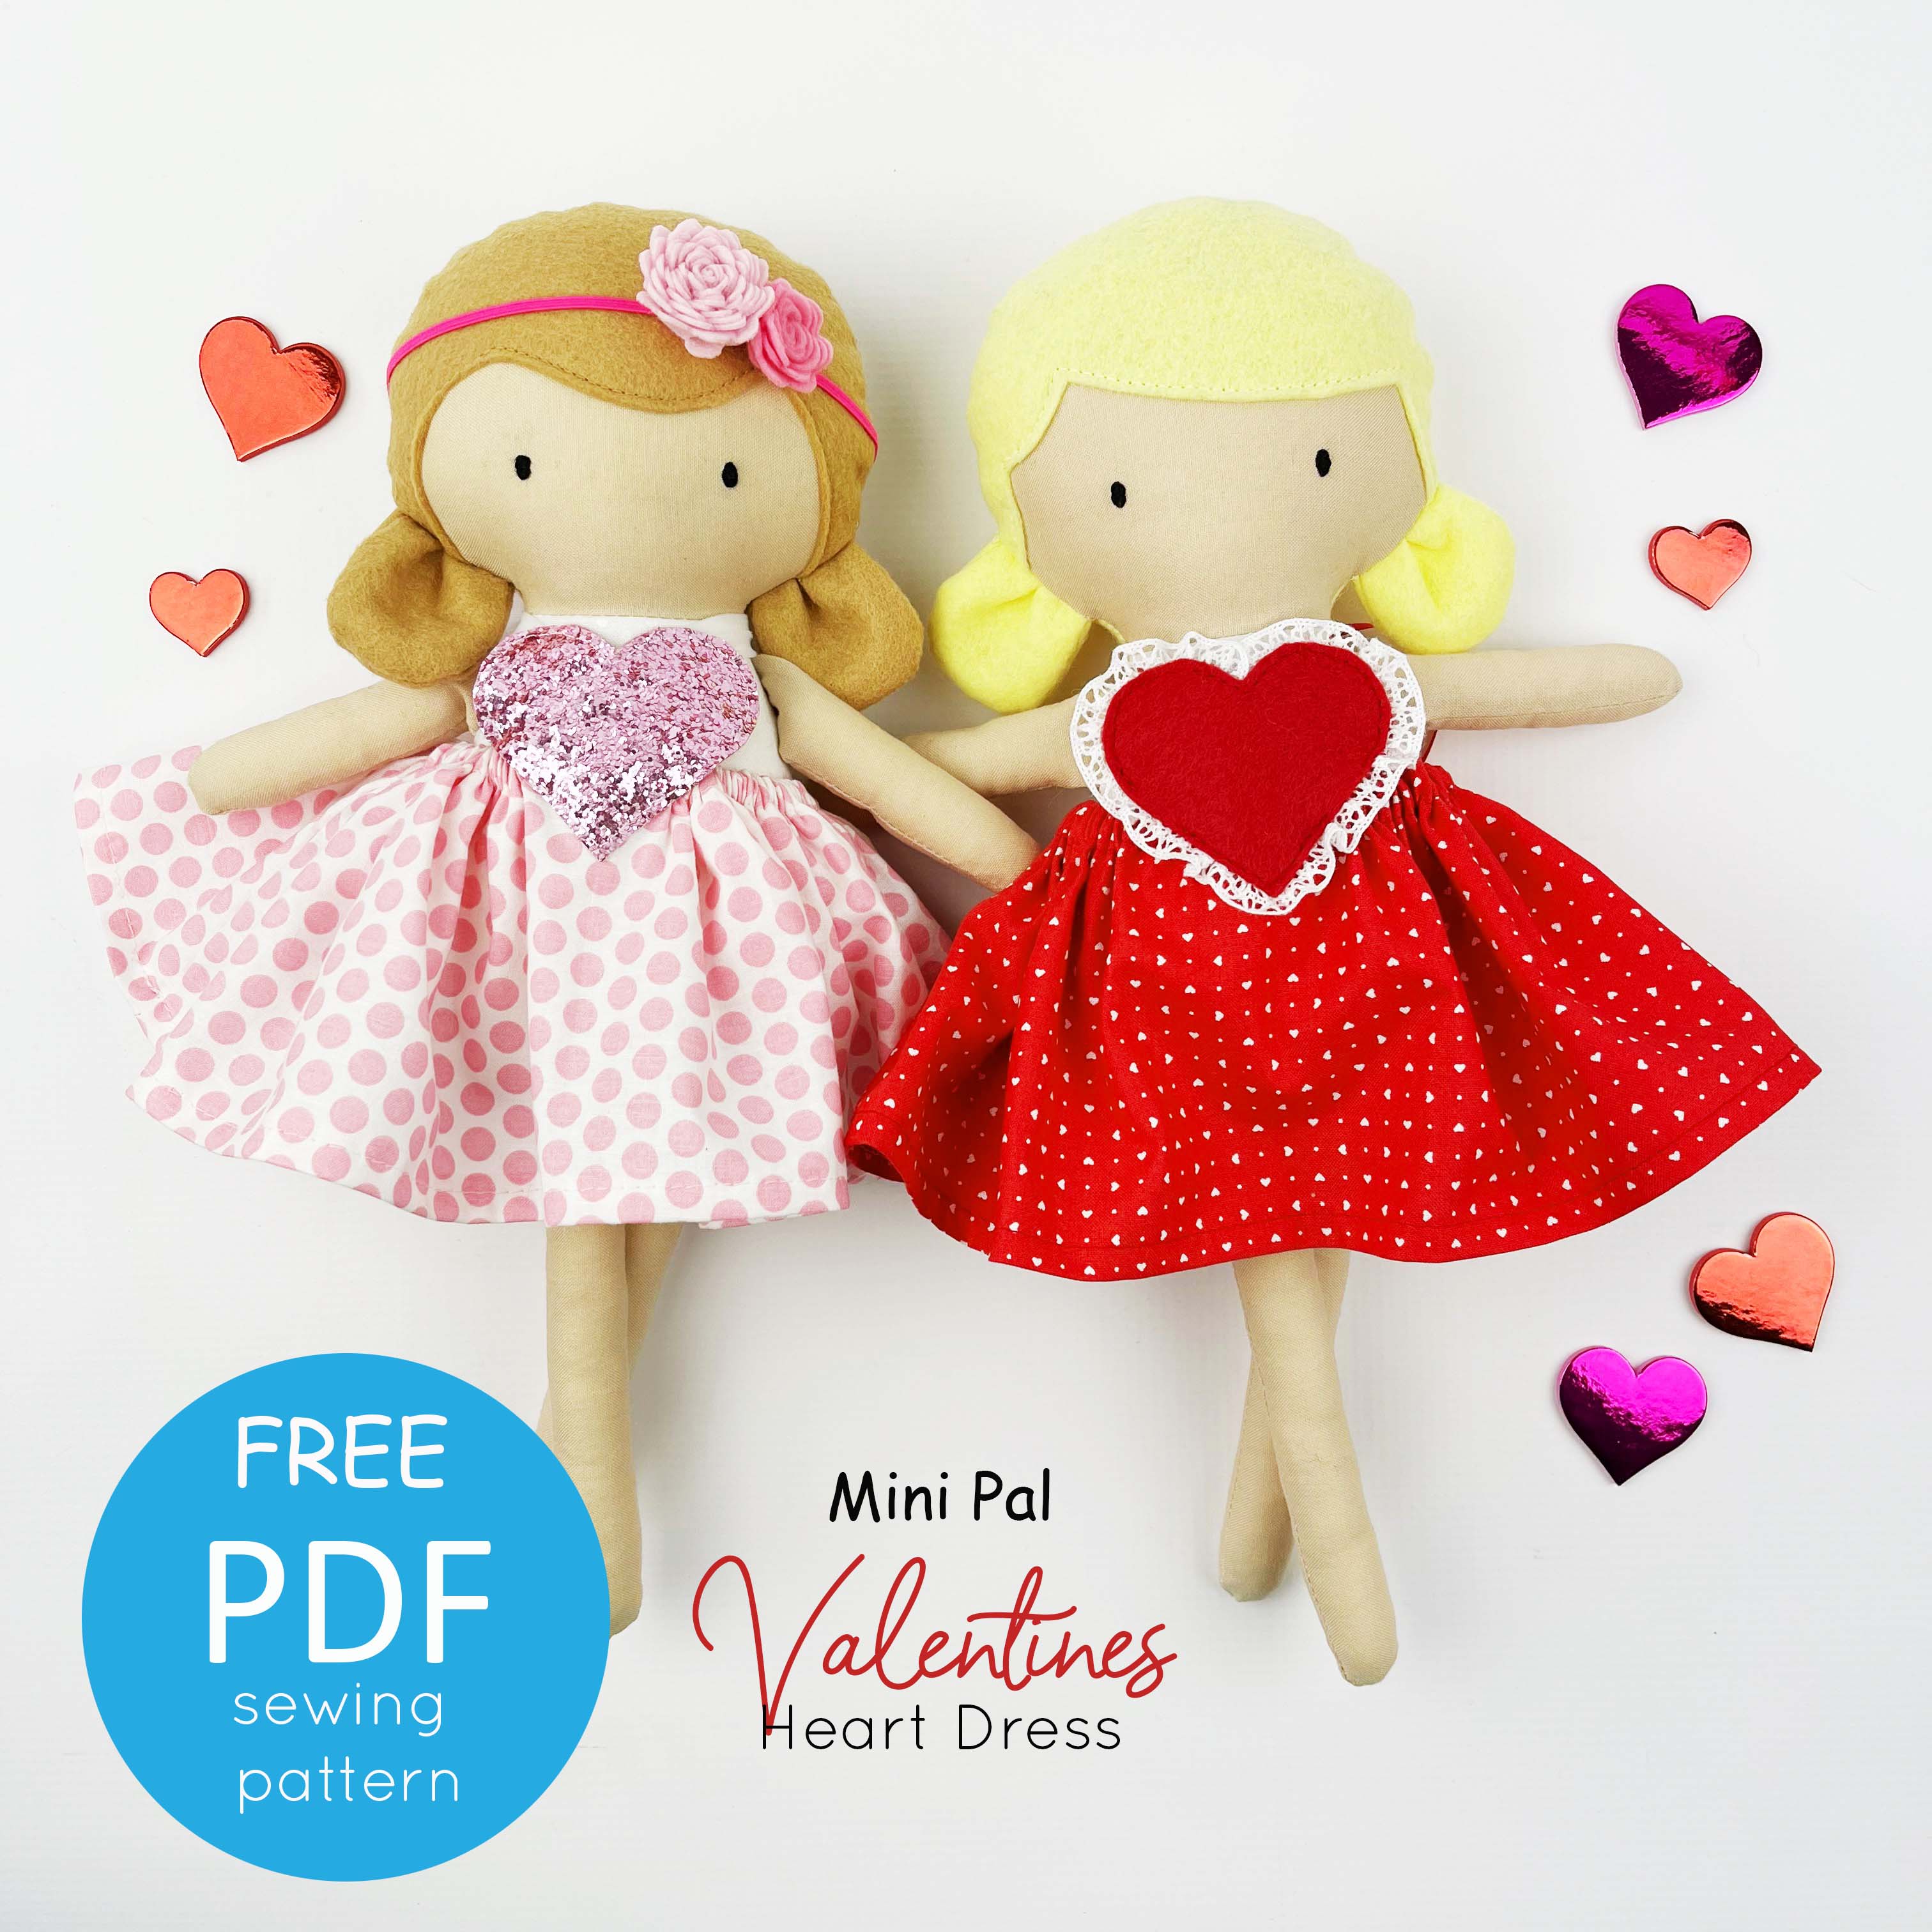 Mini Pal 14" doll Valentines heart dress - FREE